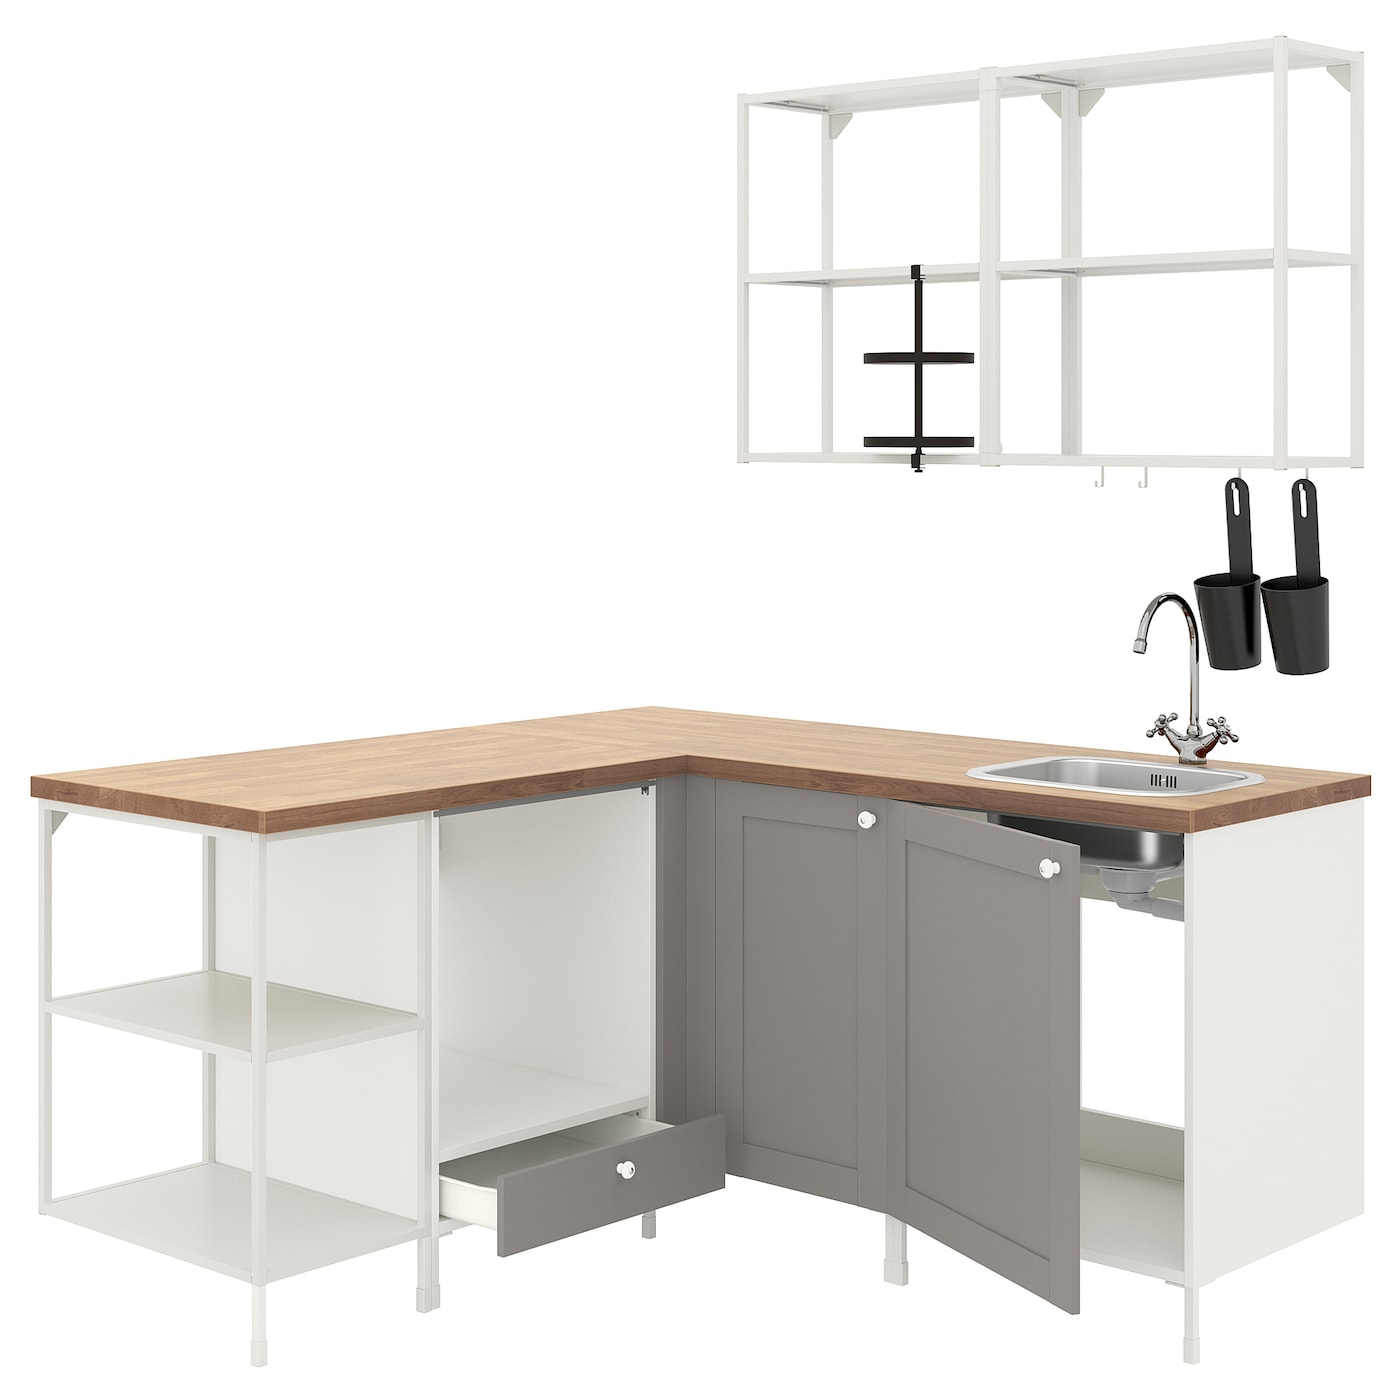 Угловая кухонная комбинация для хранения - ENHET  IKEA/ ЭНХЕТ ИКЕА, 170,5x168,5x75 см, белый/бежевый/серый